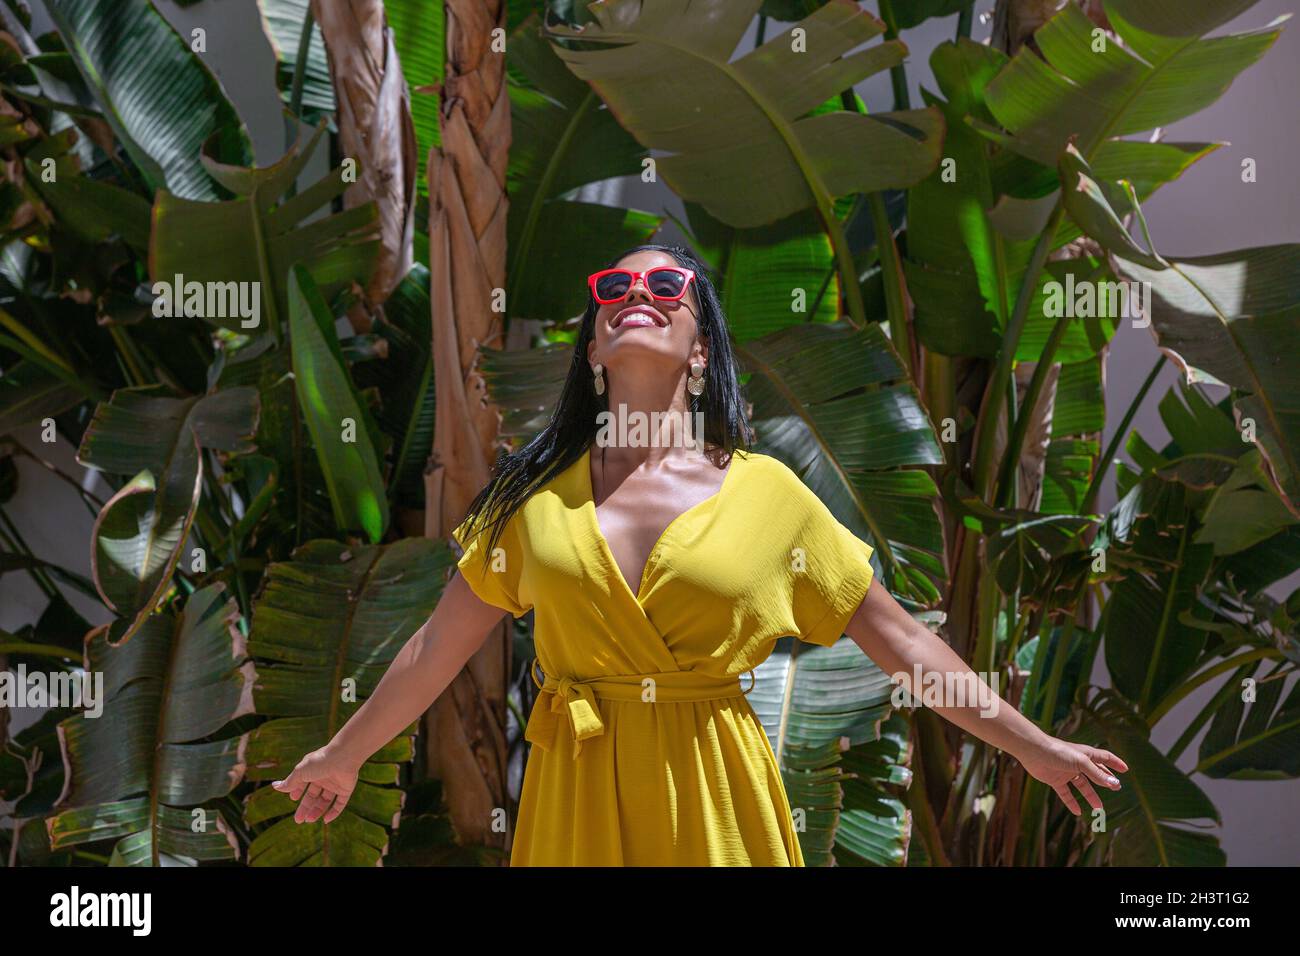 Vorderansicht einer Latina-Frau, die in einem gelben Kleid und einer Sonnenbrille steht und mit ausgestreckten Armen auf einem Hintergrund mit grünen Pflanzen auf einem sonnigen Blick nach oben blickt Stockfoto